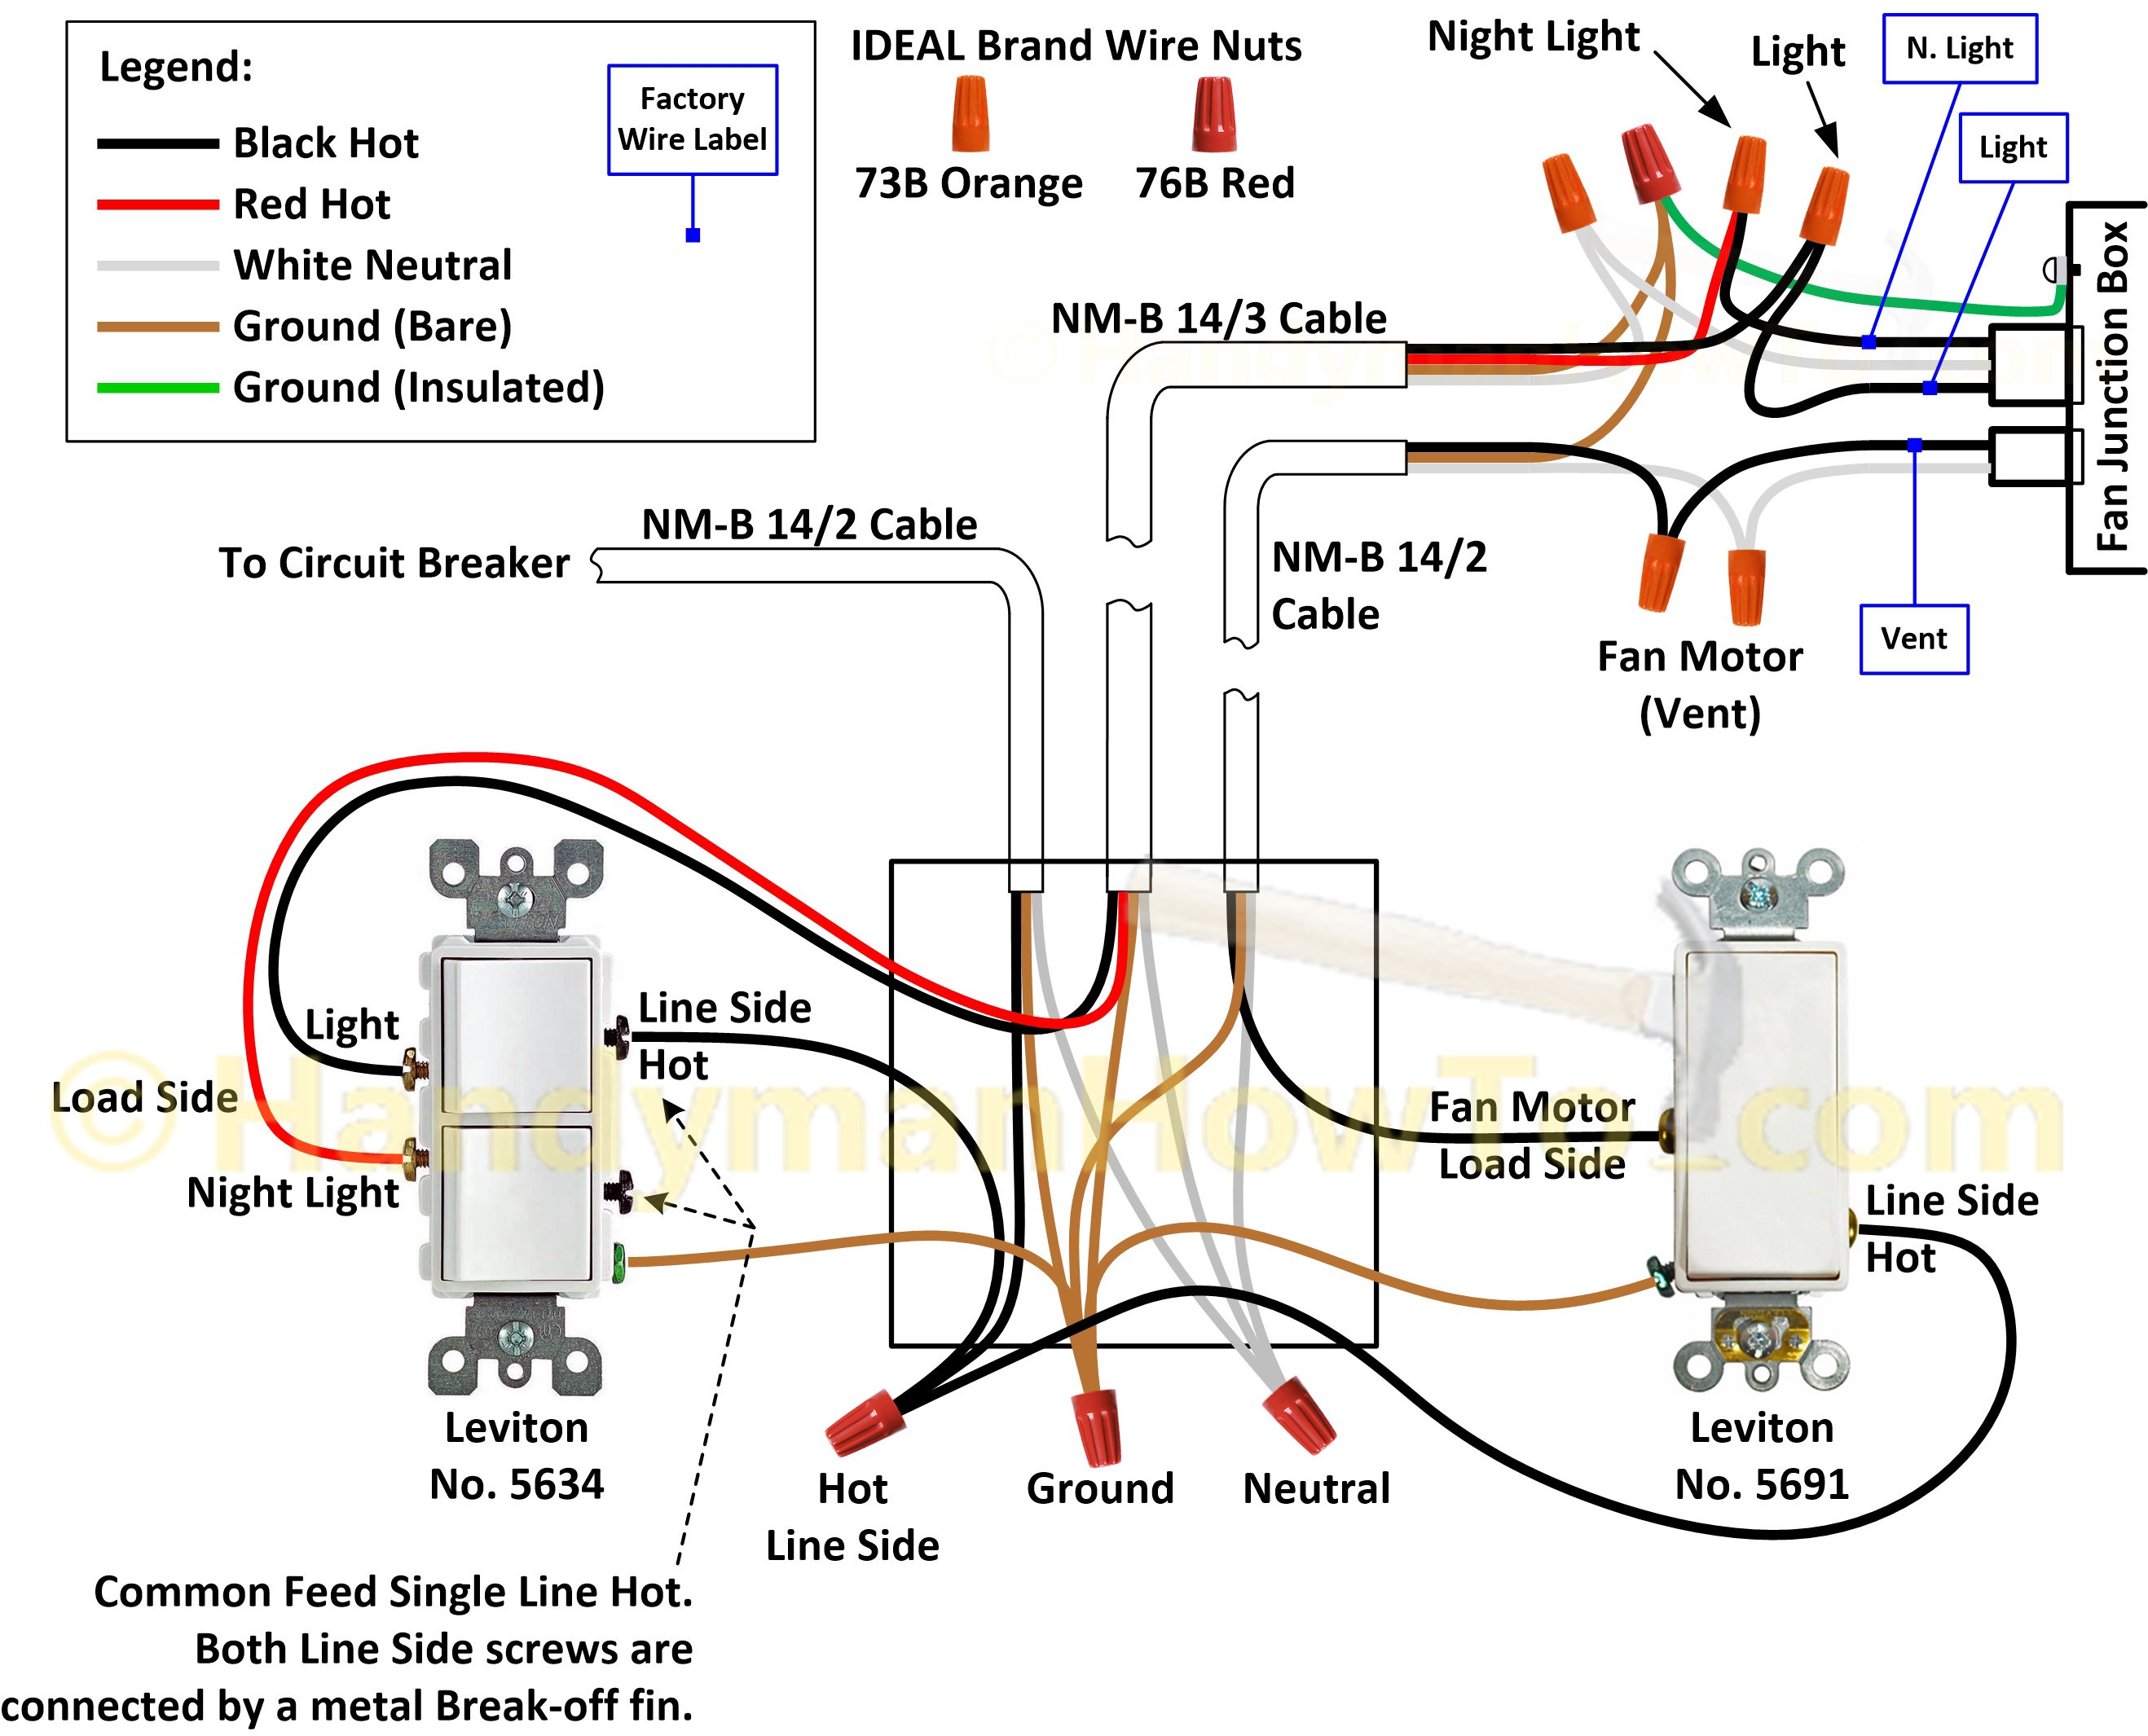 digital ally dvm 500 plus wiring diagram